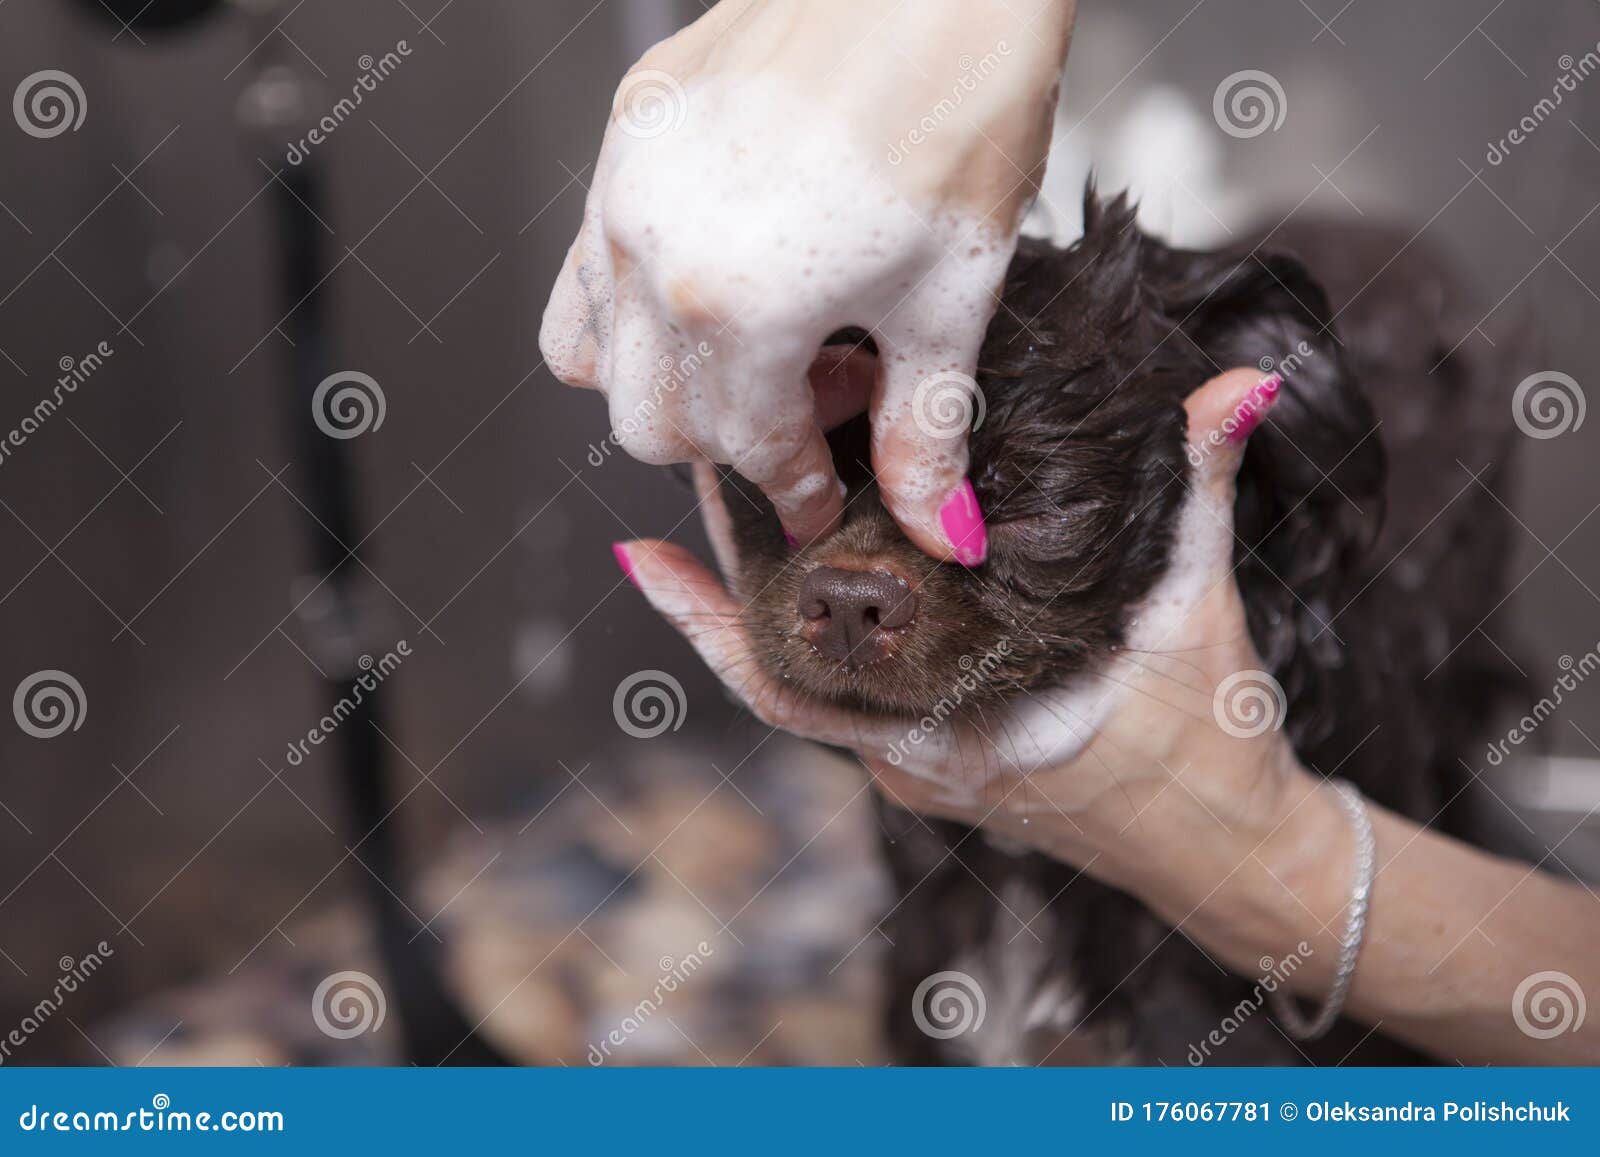 adorable paws dog grooming salon